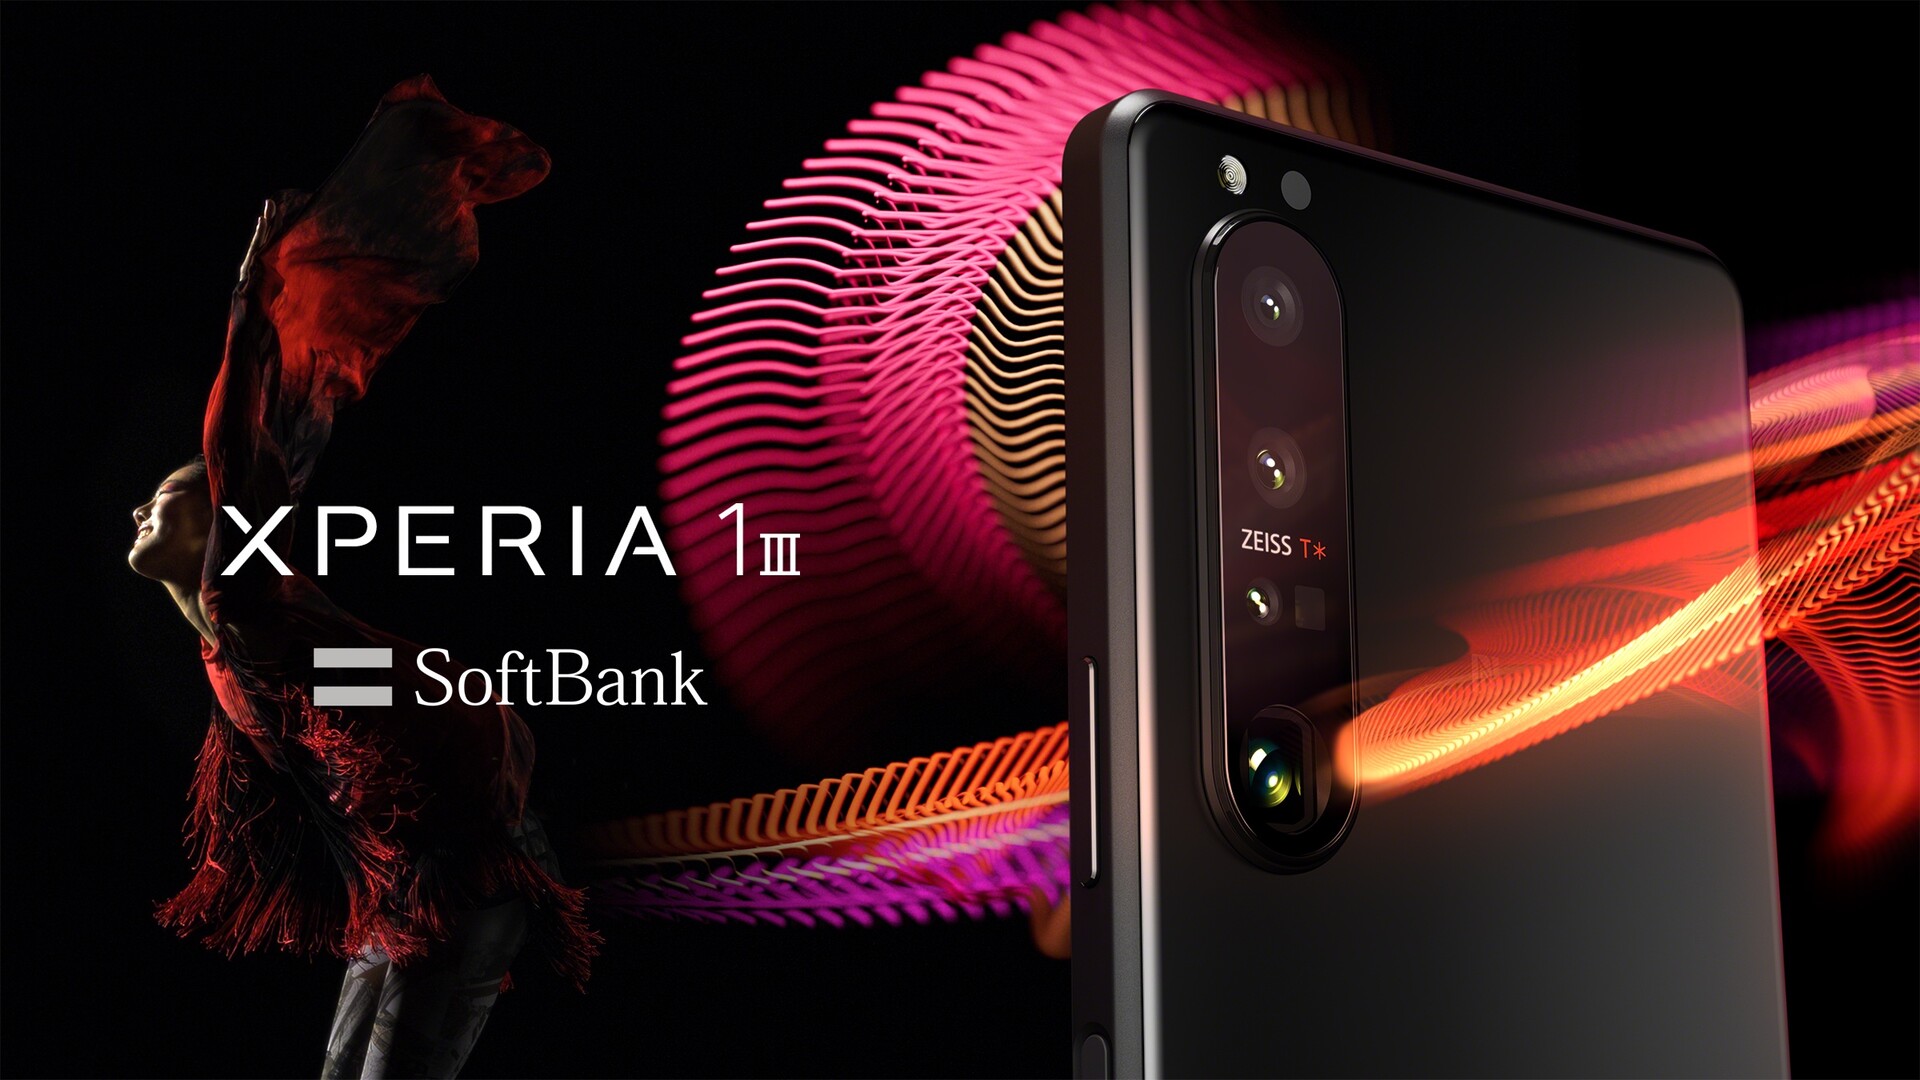 ソフトバンク Softbank向け5g対応フラッグシップスマホ Xperia 1 Iii を発表 6月中旬以降発売予定 ミリ波やおサイフケータイに対応 S Max